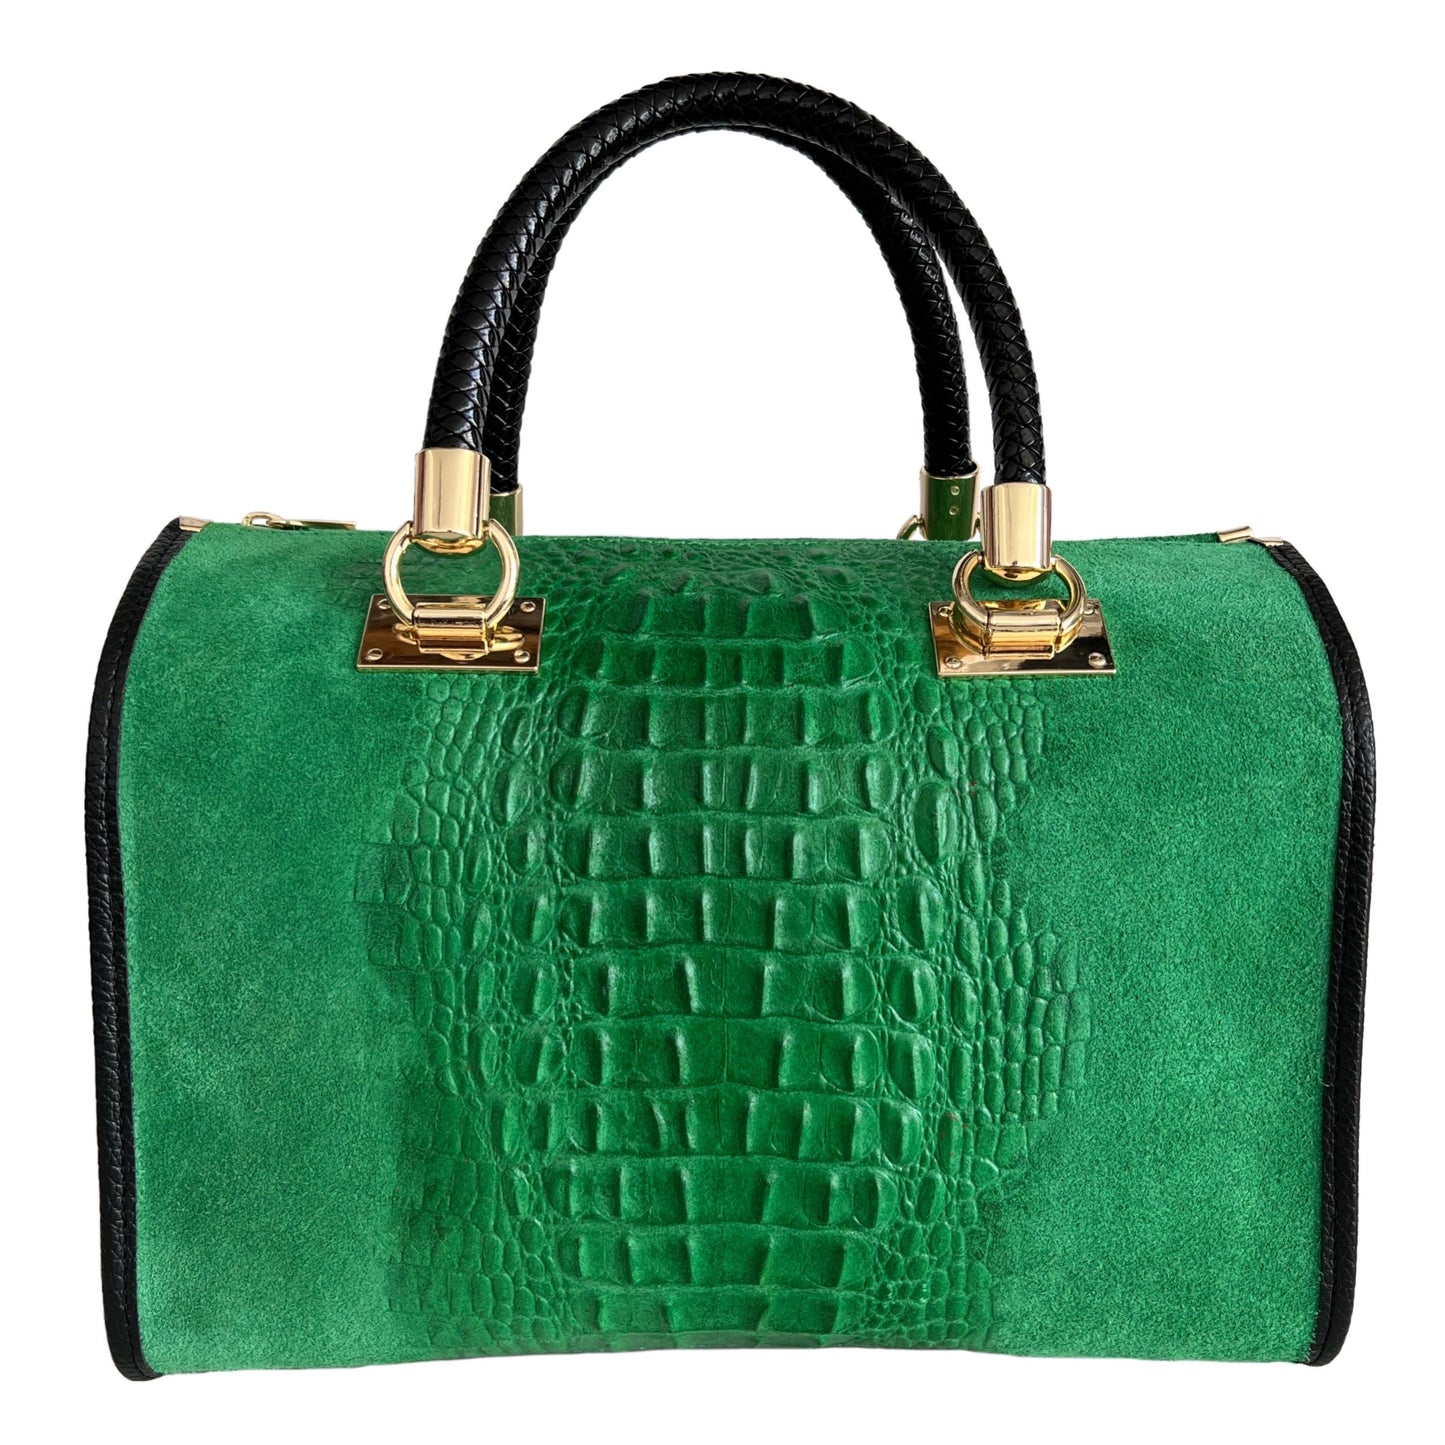 Modarno Woman bag - handbag in crocodile print suede leather